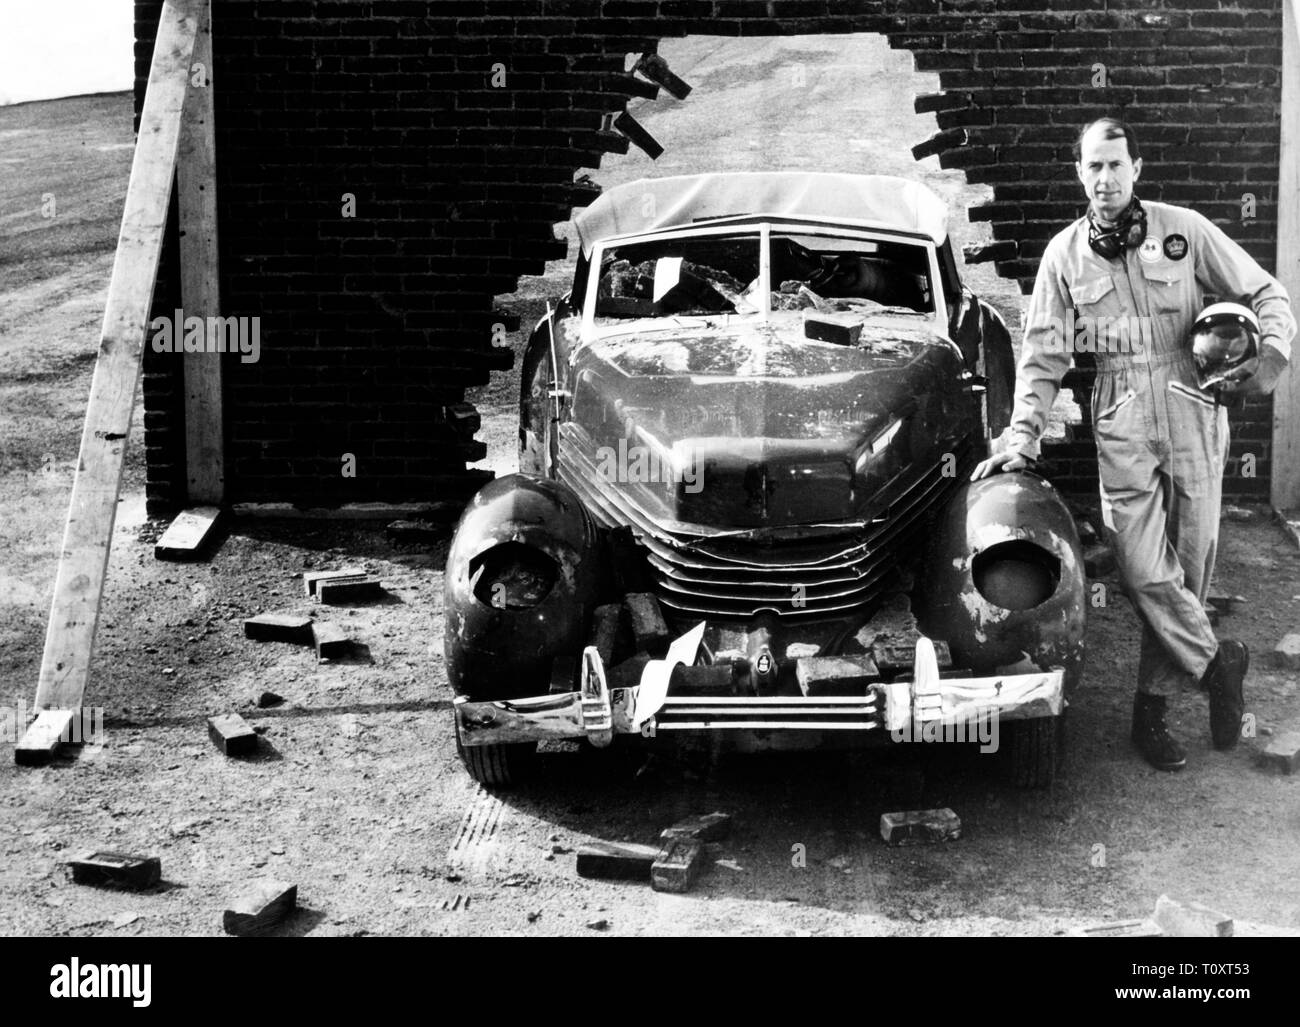 Royalex voiture après un crash test, 1969 Banque D'Images